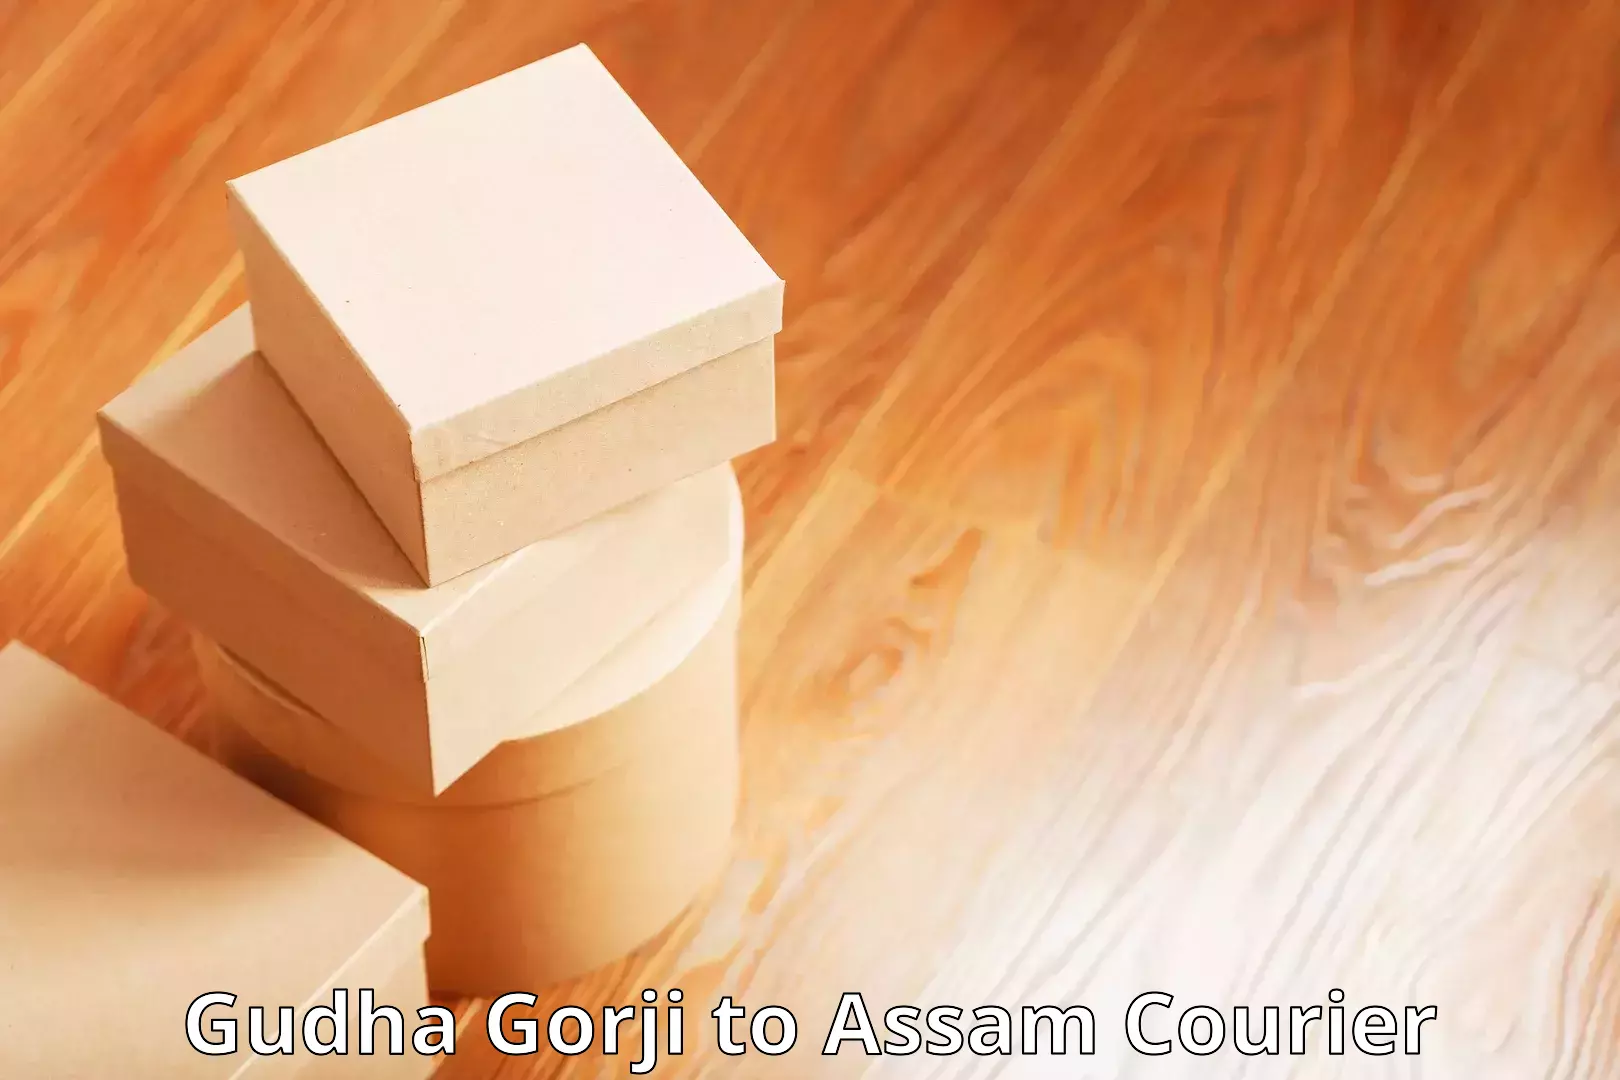 Customized delivery options Gudha Gorji to Nalbari